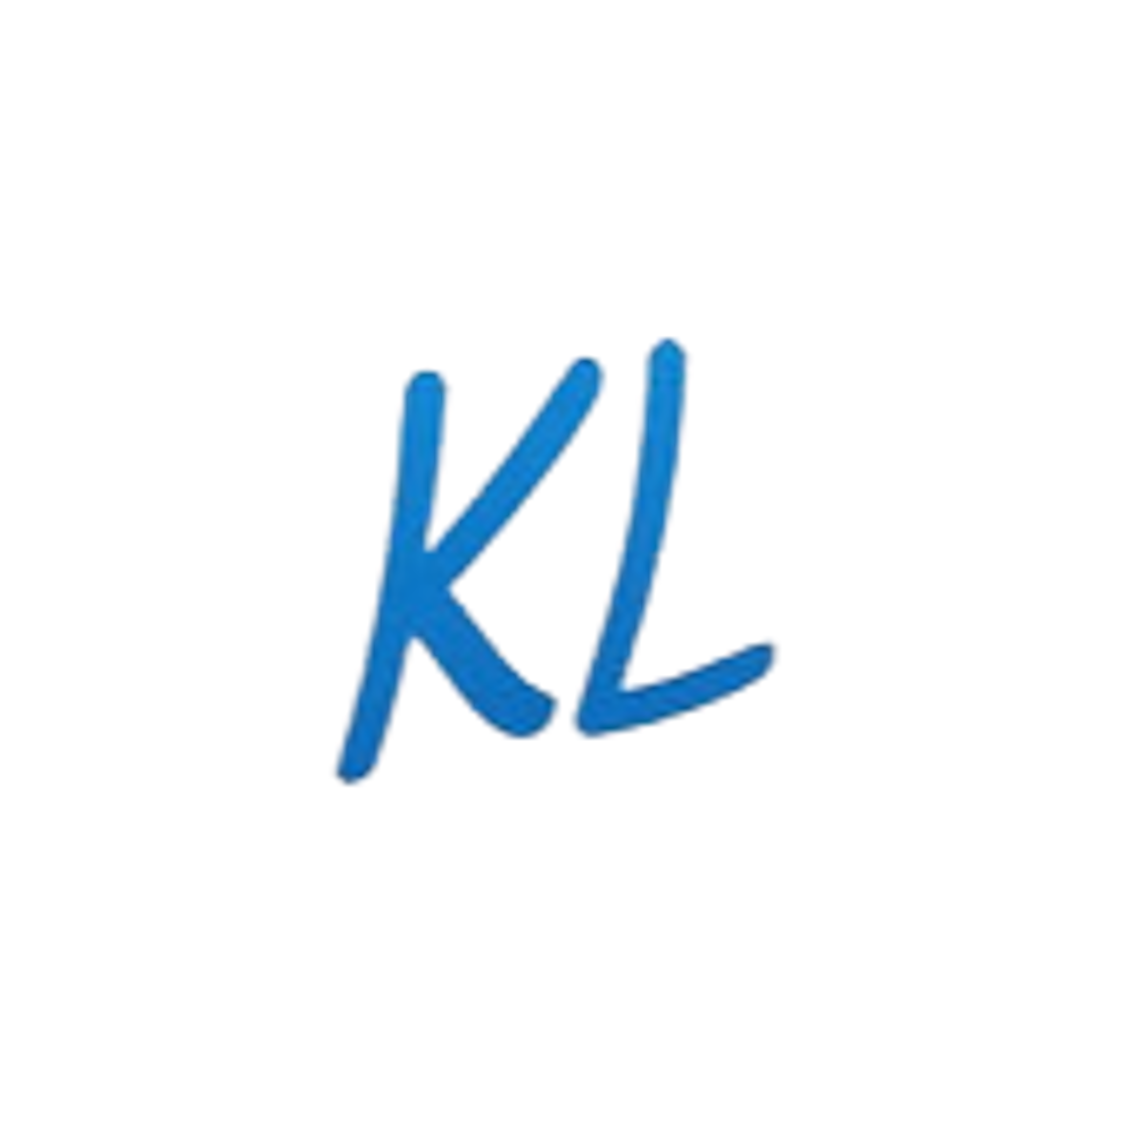 KL/SL